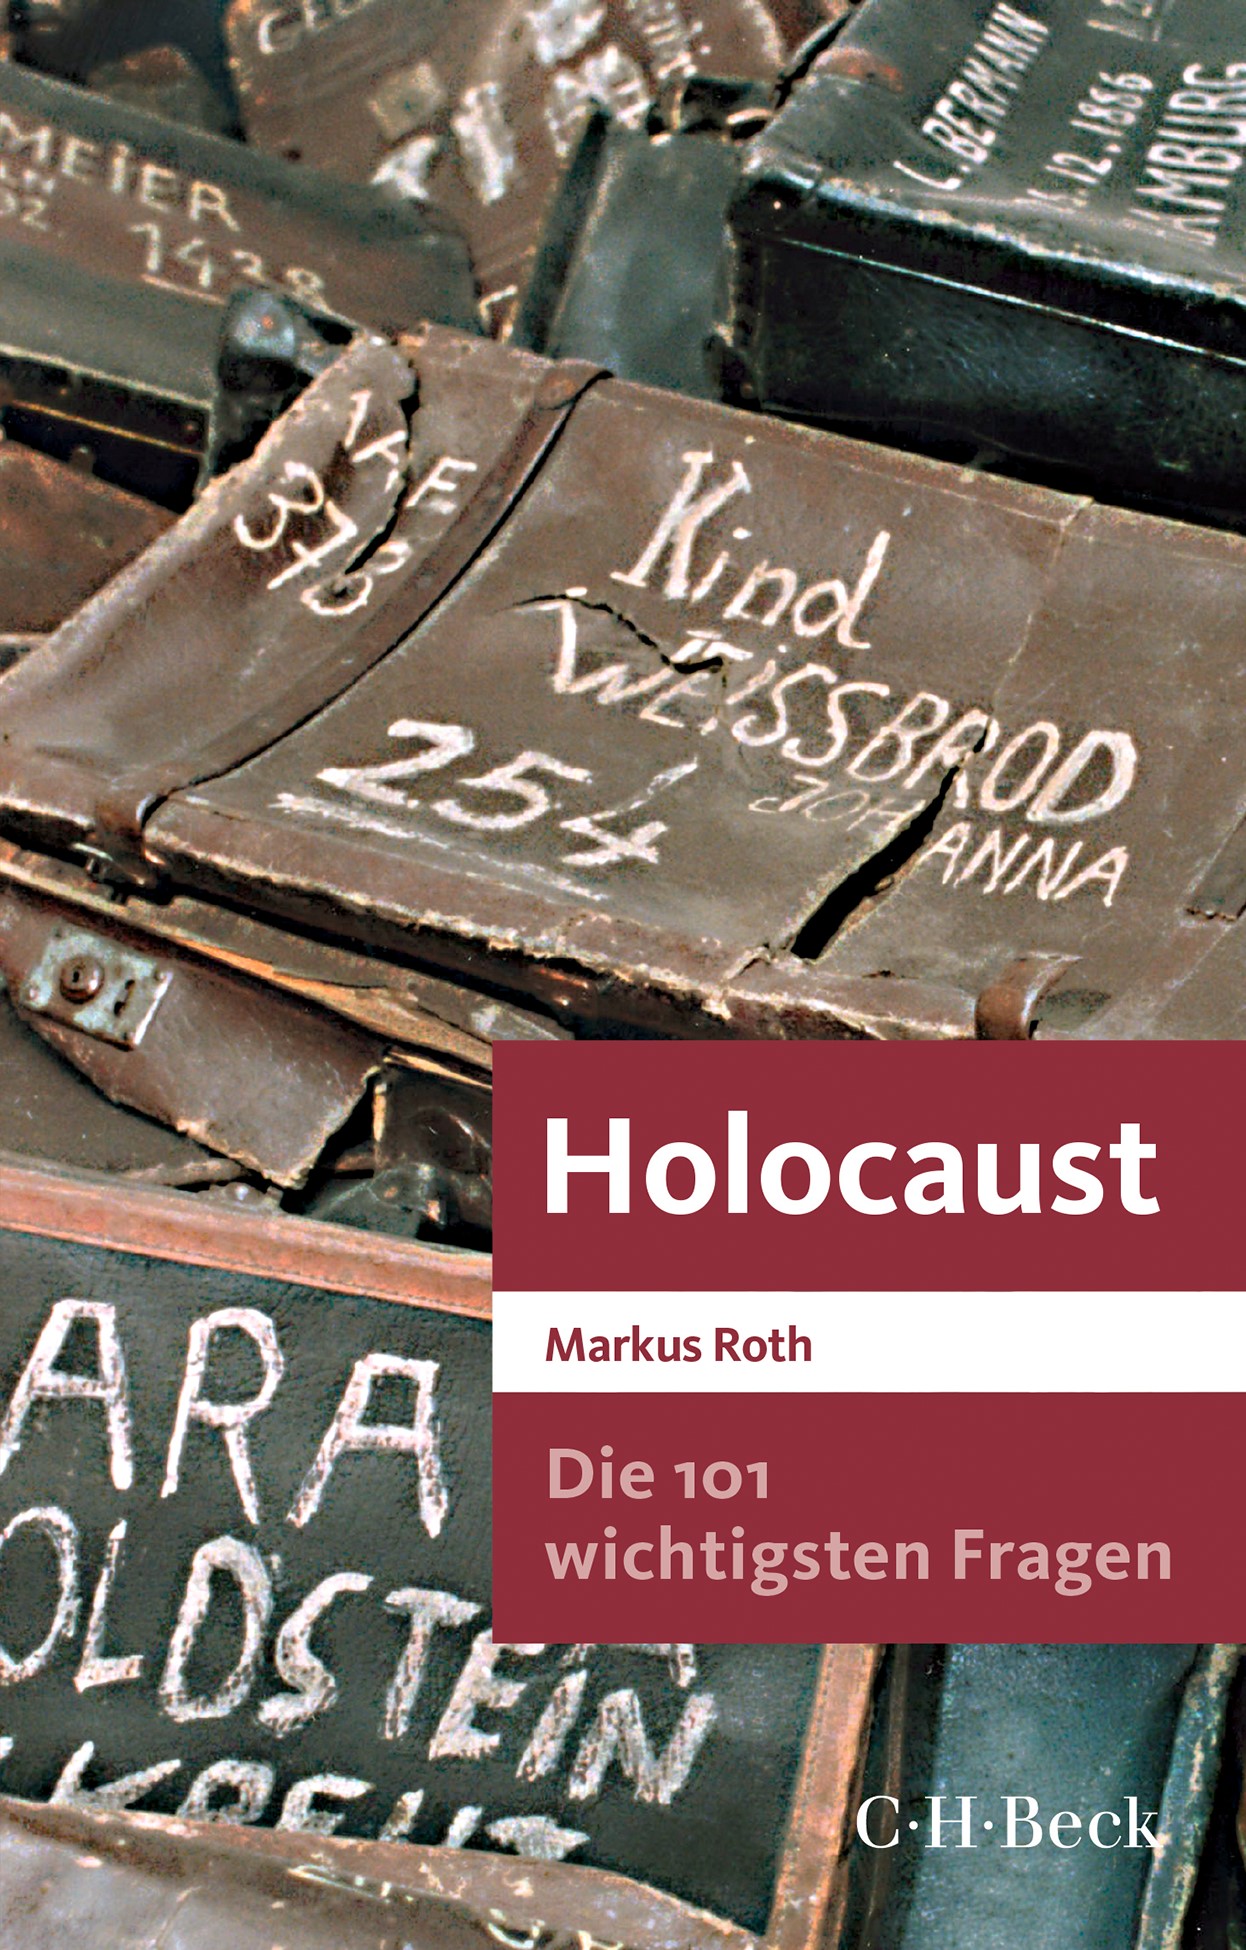 Cover: Roth, Markus, Die 101 wichtigsten Fragen - Holocaust